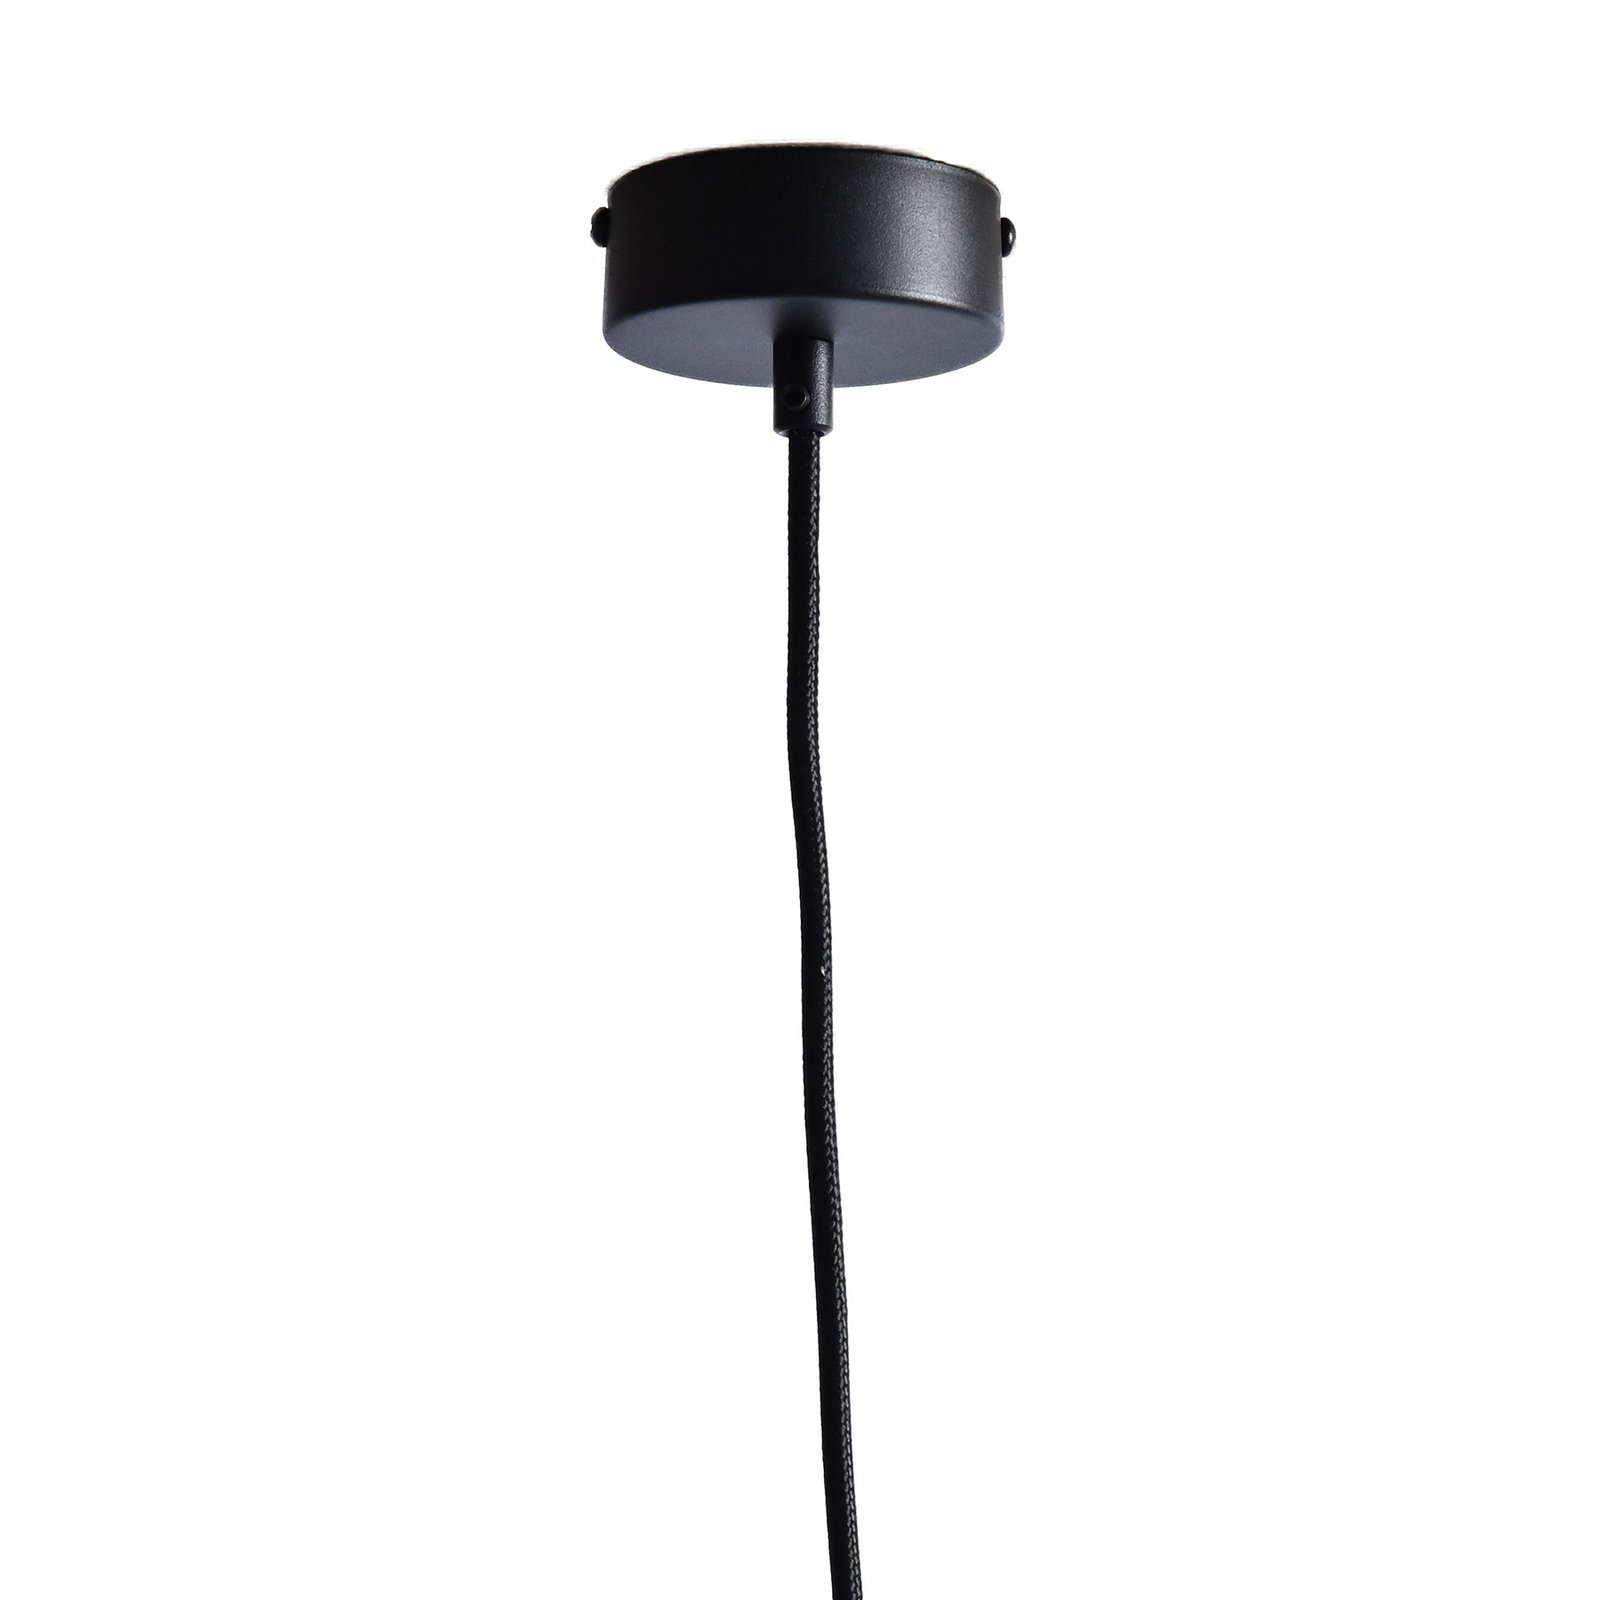 LeuchtNatur Nux hanglamp, noten satin/zwart